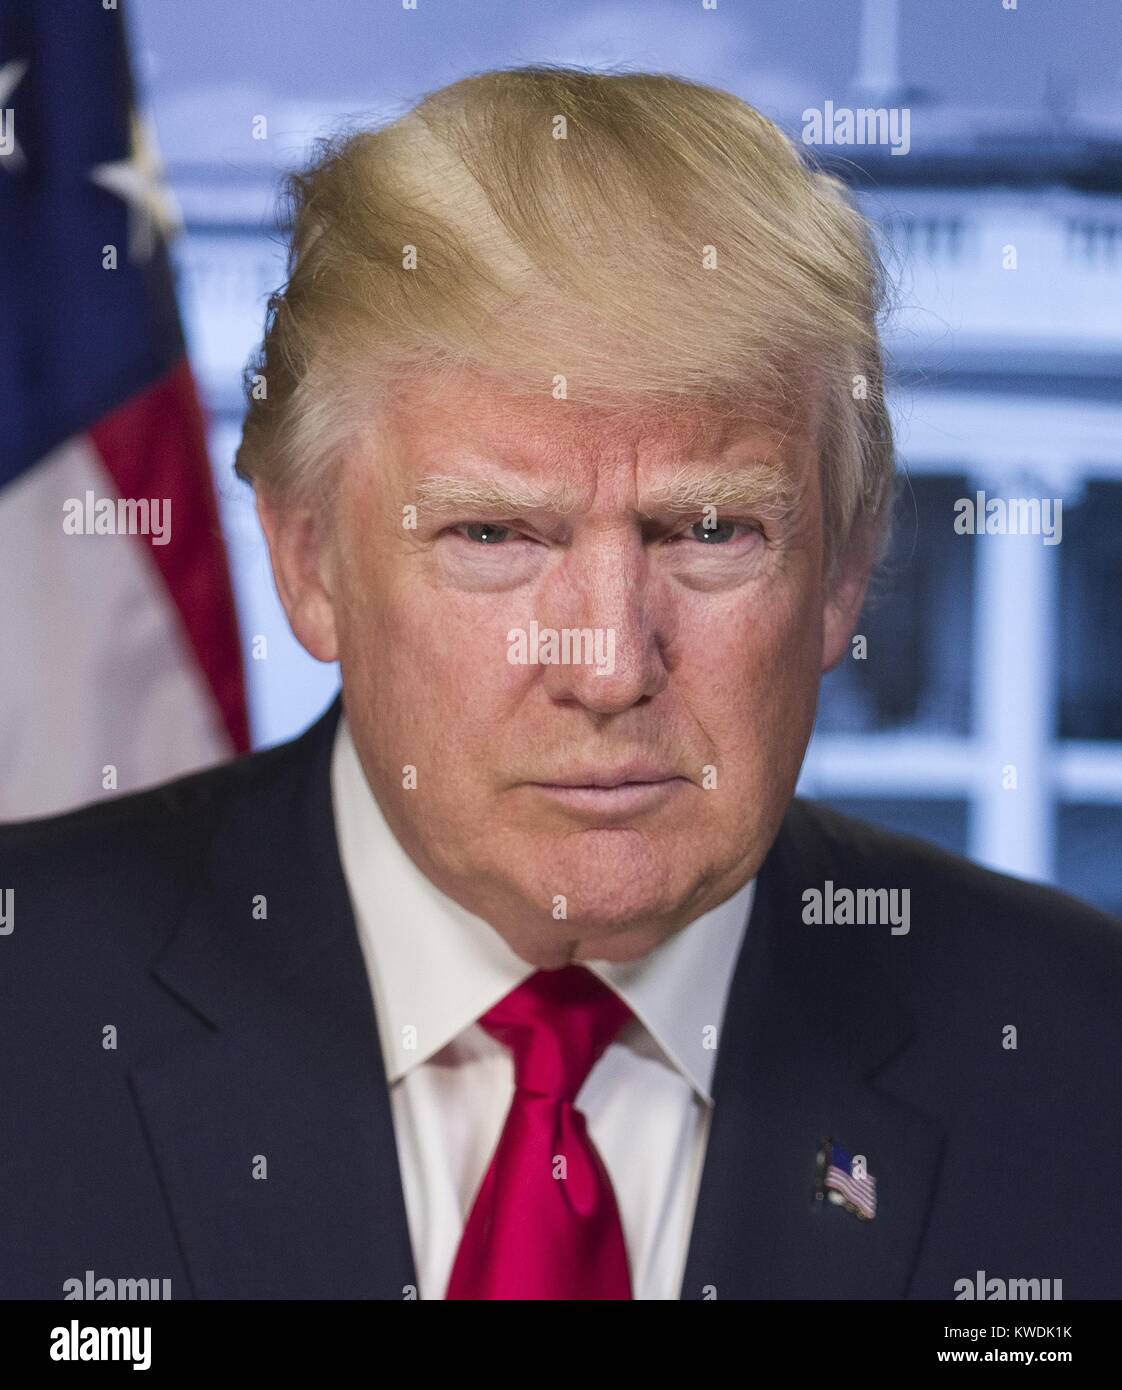 Le Président élu l'atout de Donald dans un portrait publié par la Maison Blanche le 20 janvier 2017. Trump est souriant, projetant stern et désagréable de l'émotion. La focale courte provoque un ramollissement en dehors du plan du visage, mais il n'y a pas vraiment de retouche numérique. Le portrait fut probablement pris devant un écran vert neutre avec pavillon et Maison Blanche ajouté par la manipulation de l'image numérique (BSLOC   2017 18 152) Banque D'Images